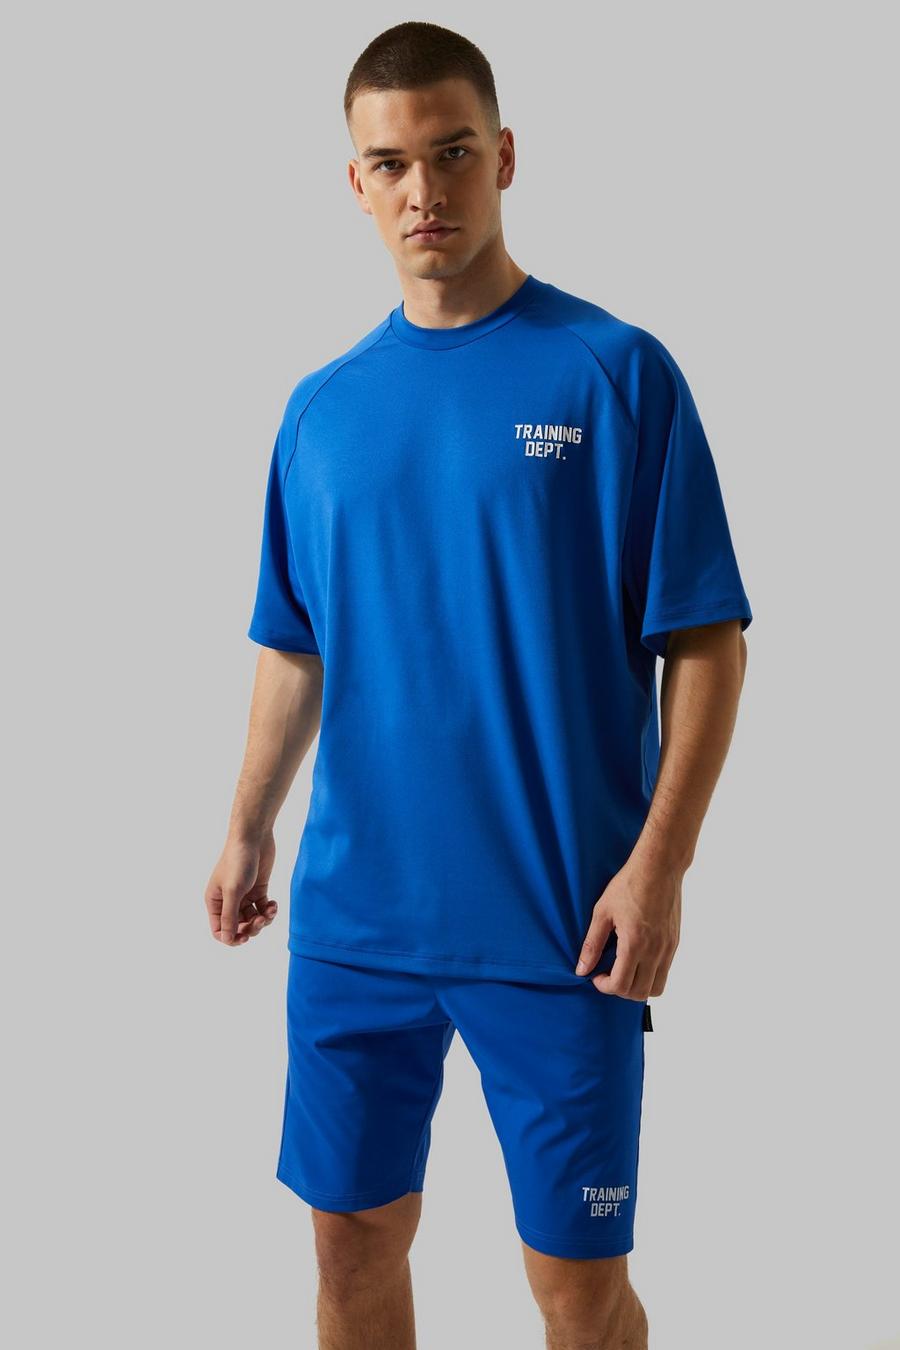 Cobalt blue Tall Boxy Man Active Training Dept T-Shirt